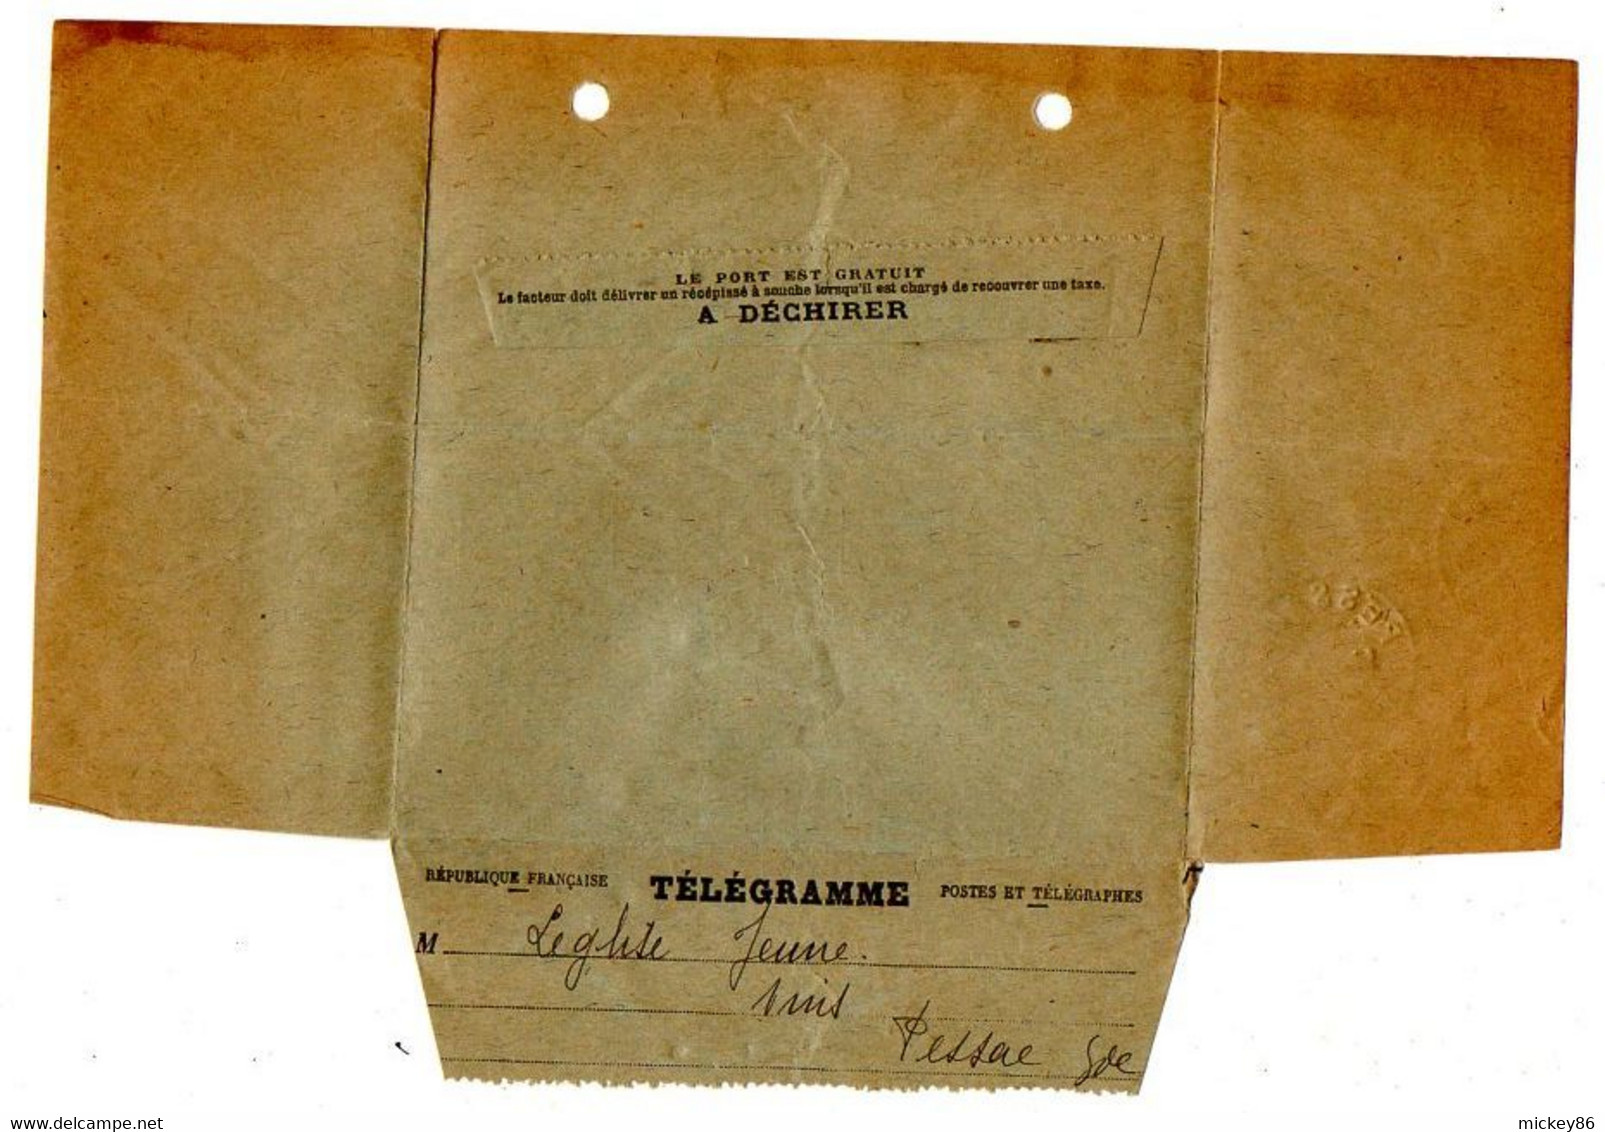 1912--Formule N° 701-Télégramme De BORDEAUX-33 Pour PESSAC-33..( Concerne Vins LEGLISE)--cachet Pessac 33 - Telegraaf-en Telefoonzegels